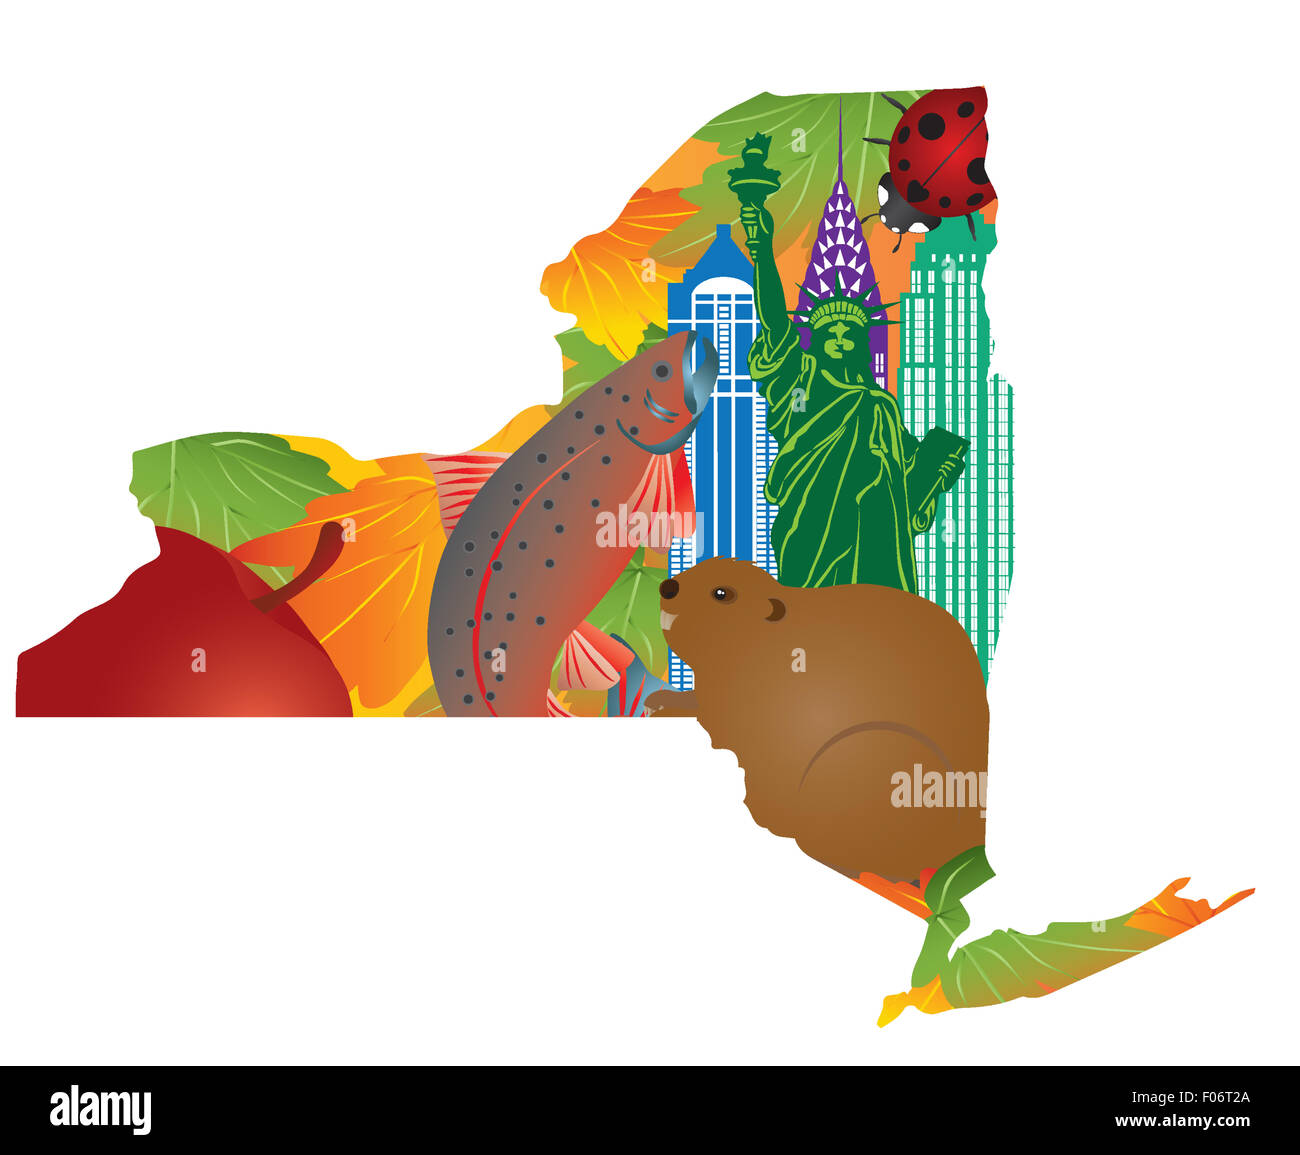 Staat New York offizielle Symbole mit Freiheitsstatue Liberty Beaver Brook Trout Marienkäfer Big Apple Zucker-Ahorn Blätter in Karte Gliederung Stockfoto